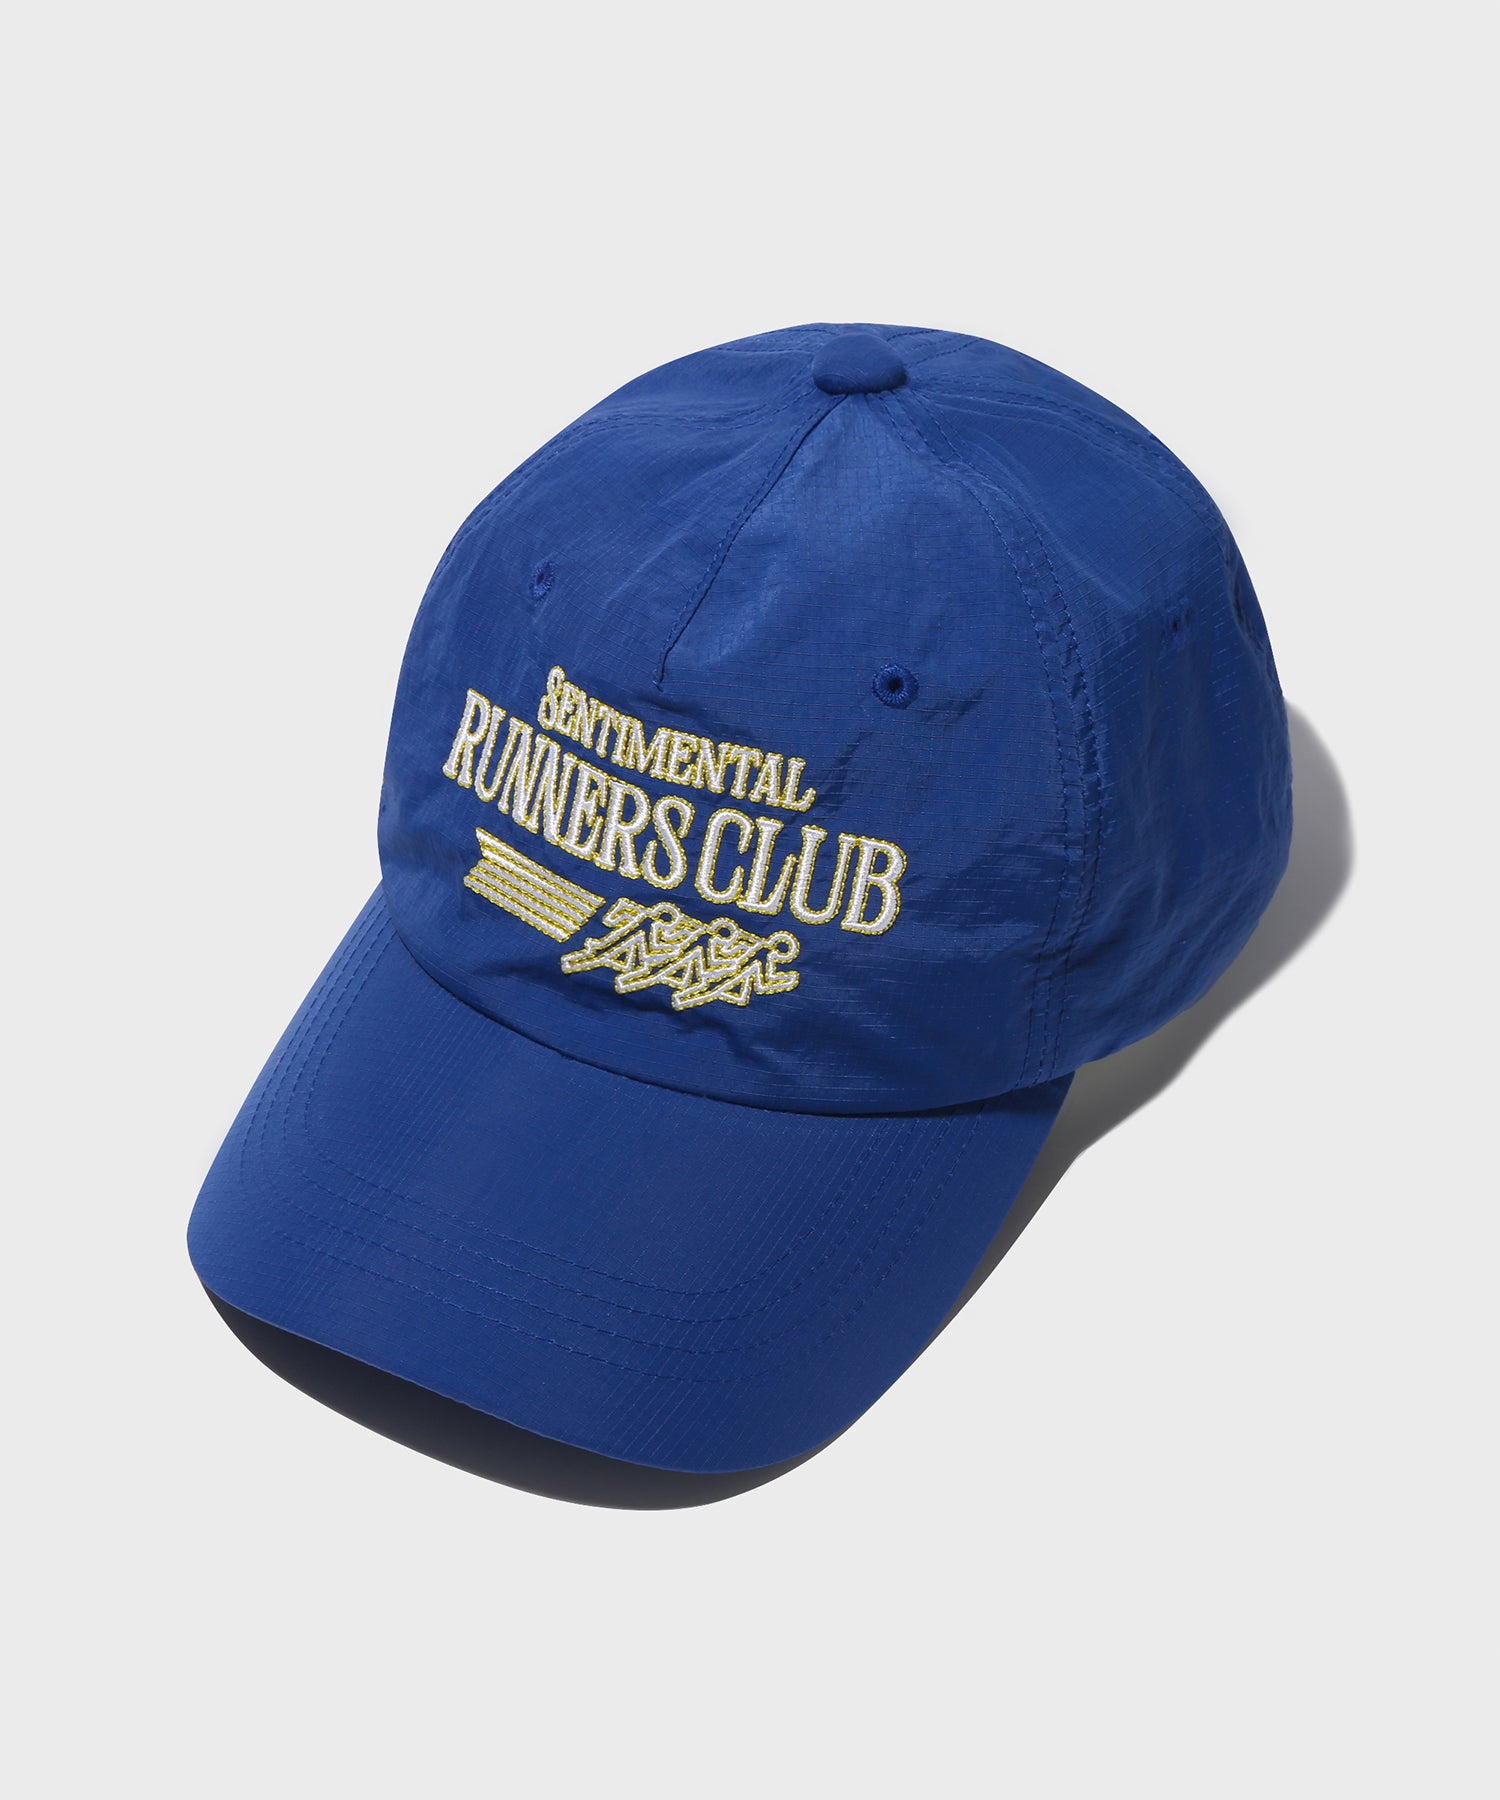 Runner's Club Nylon Cap (Blue)